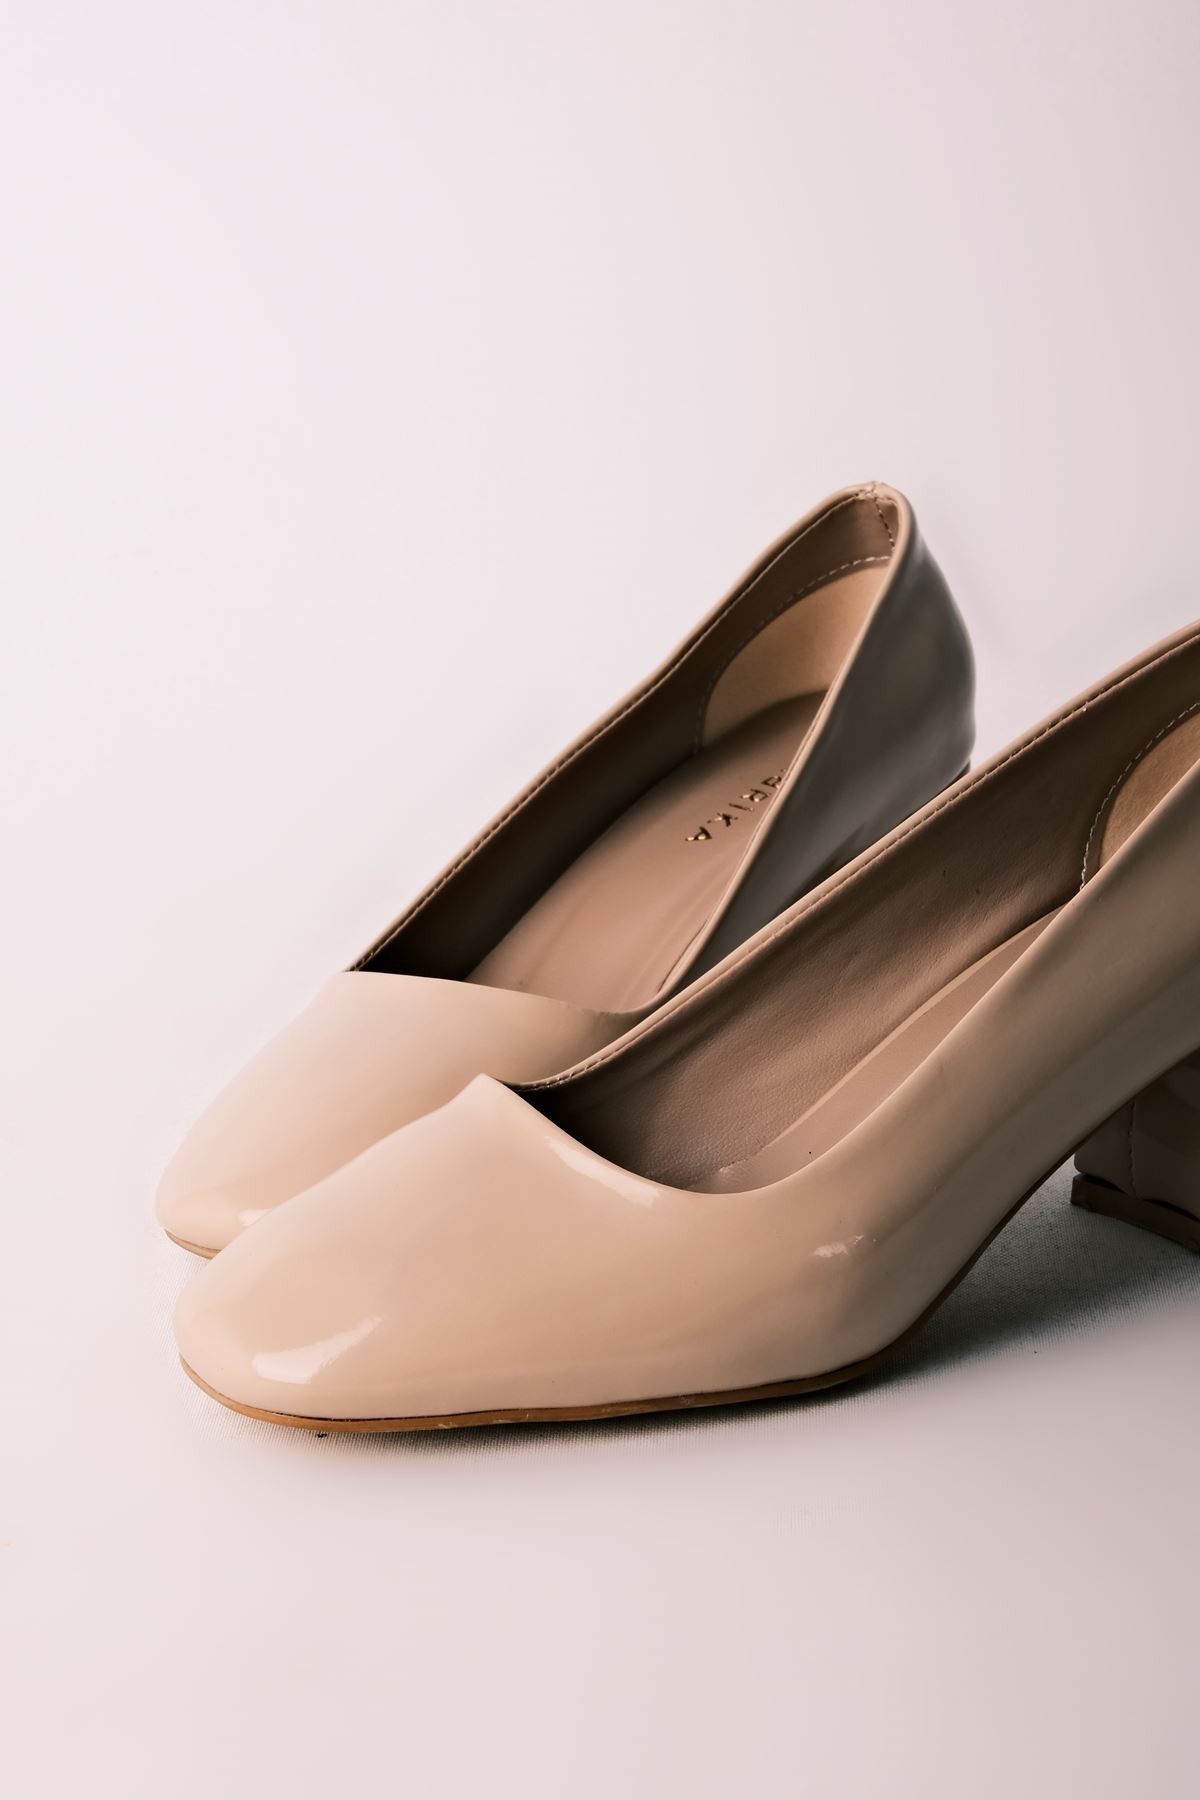 Edna Kadın Topuklu Ayakkabı Yuvarlak Burun